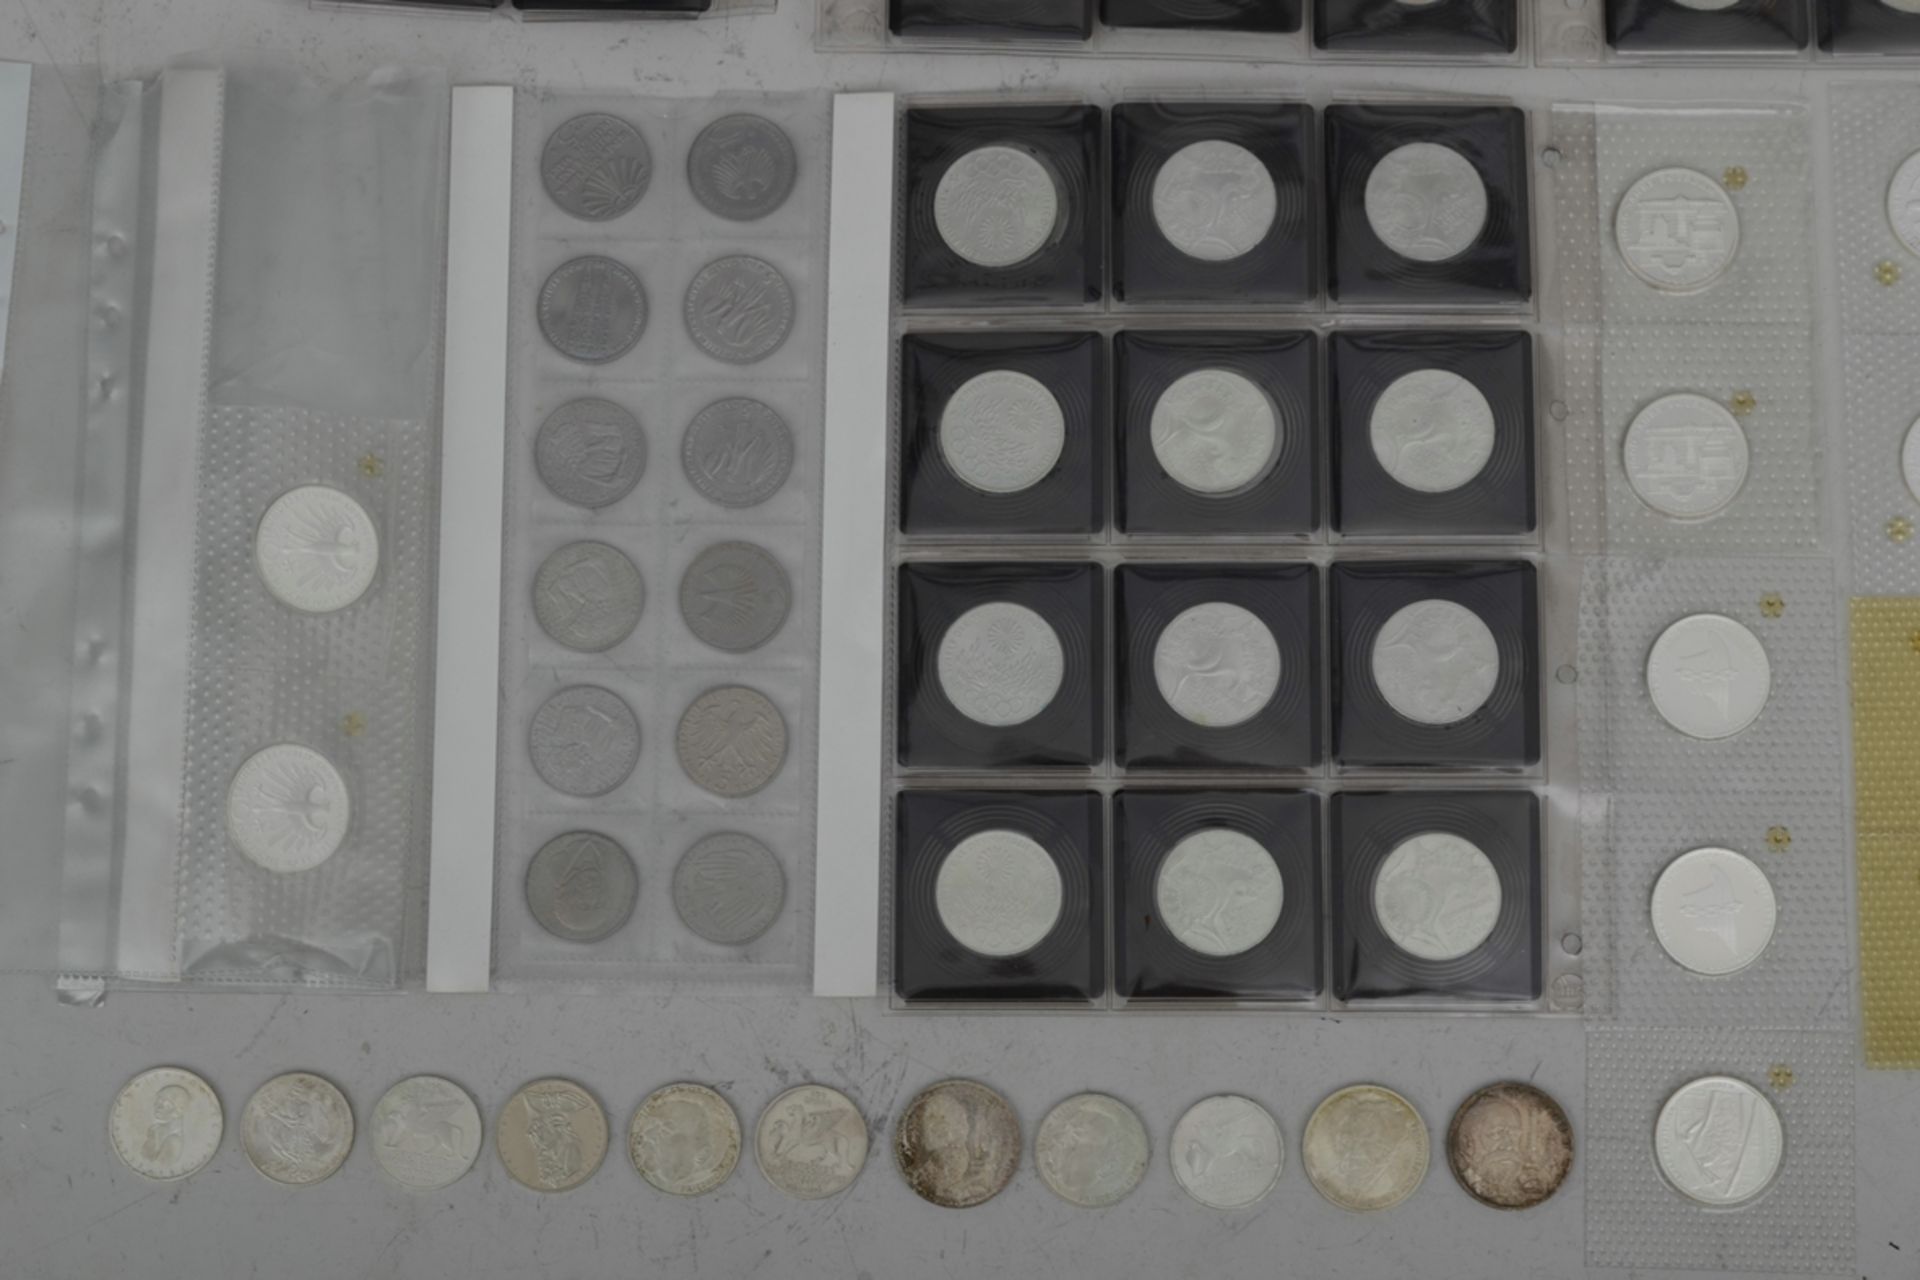 110tlg. Sammlung von 41 x 5 DM und 69 x 10 DM Münzen, teilweise Silber, zusammen ca. 895,- DM. Vers - Bild 3 aus 9